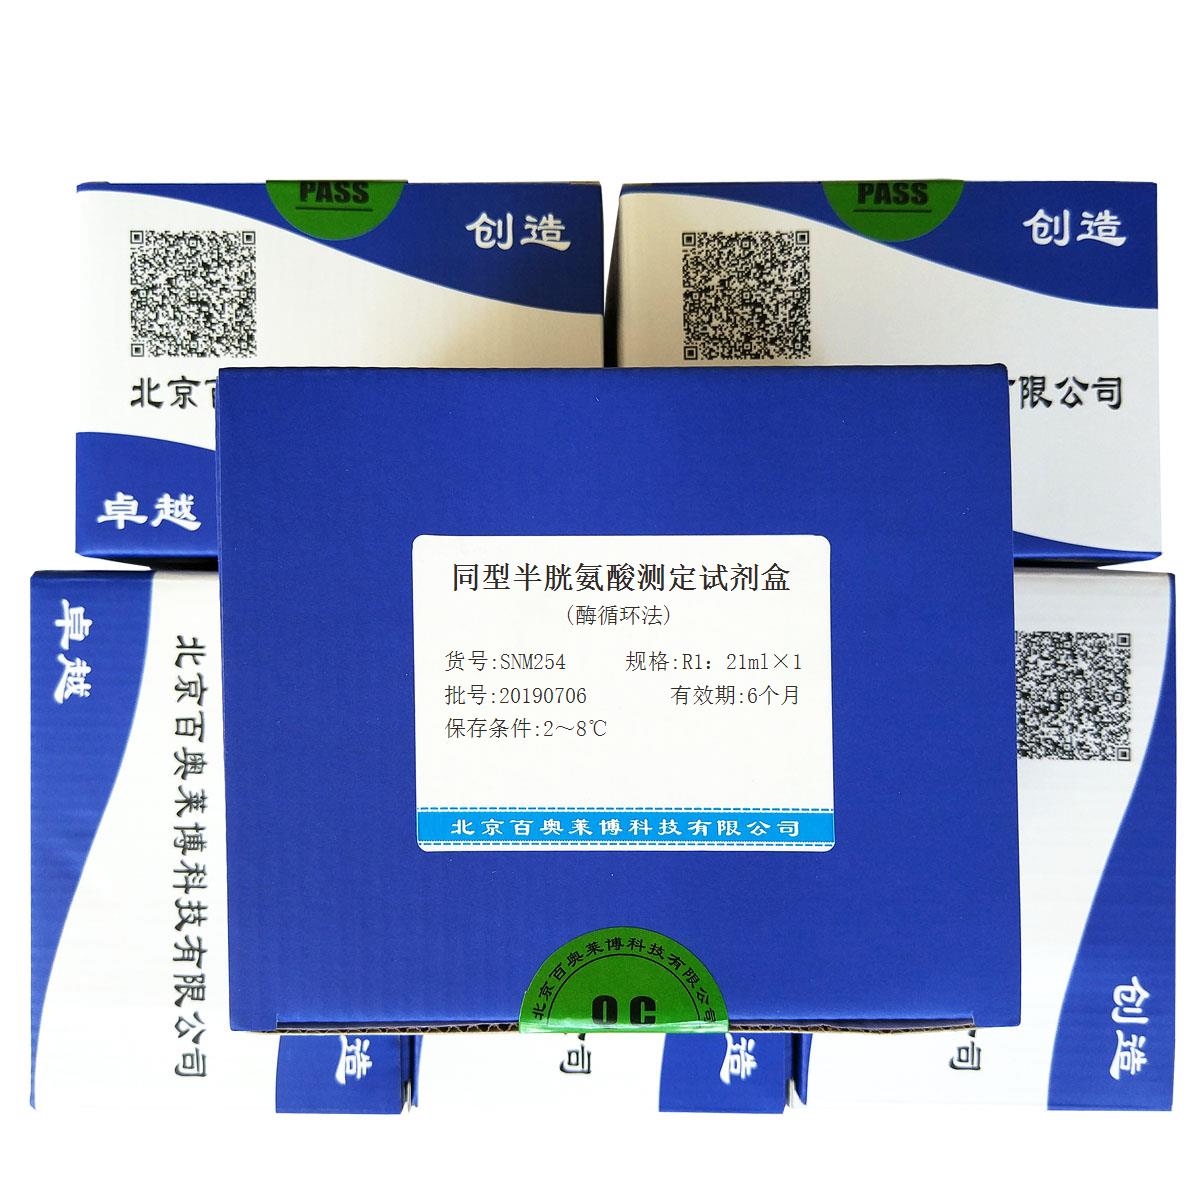 同型半胱氨酸测定试剂盒(酶循环法)优惠促销